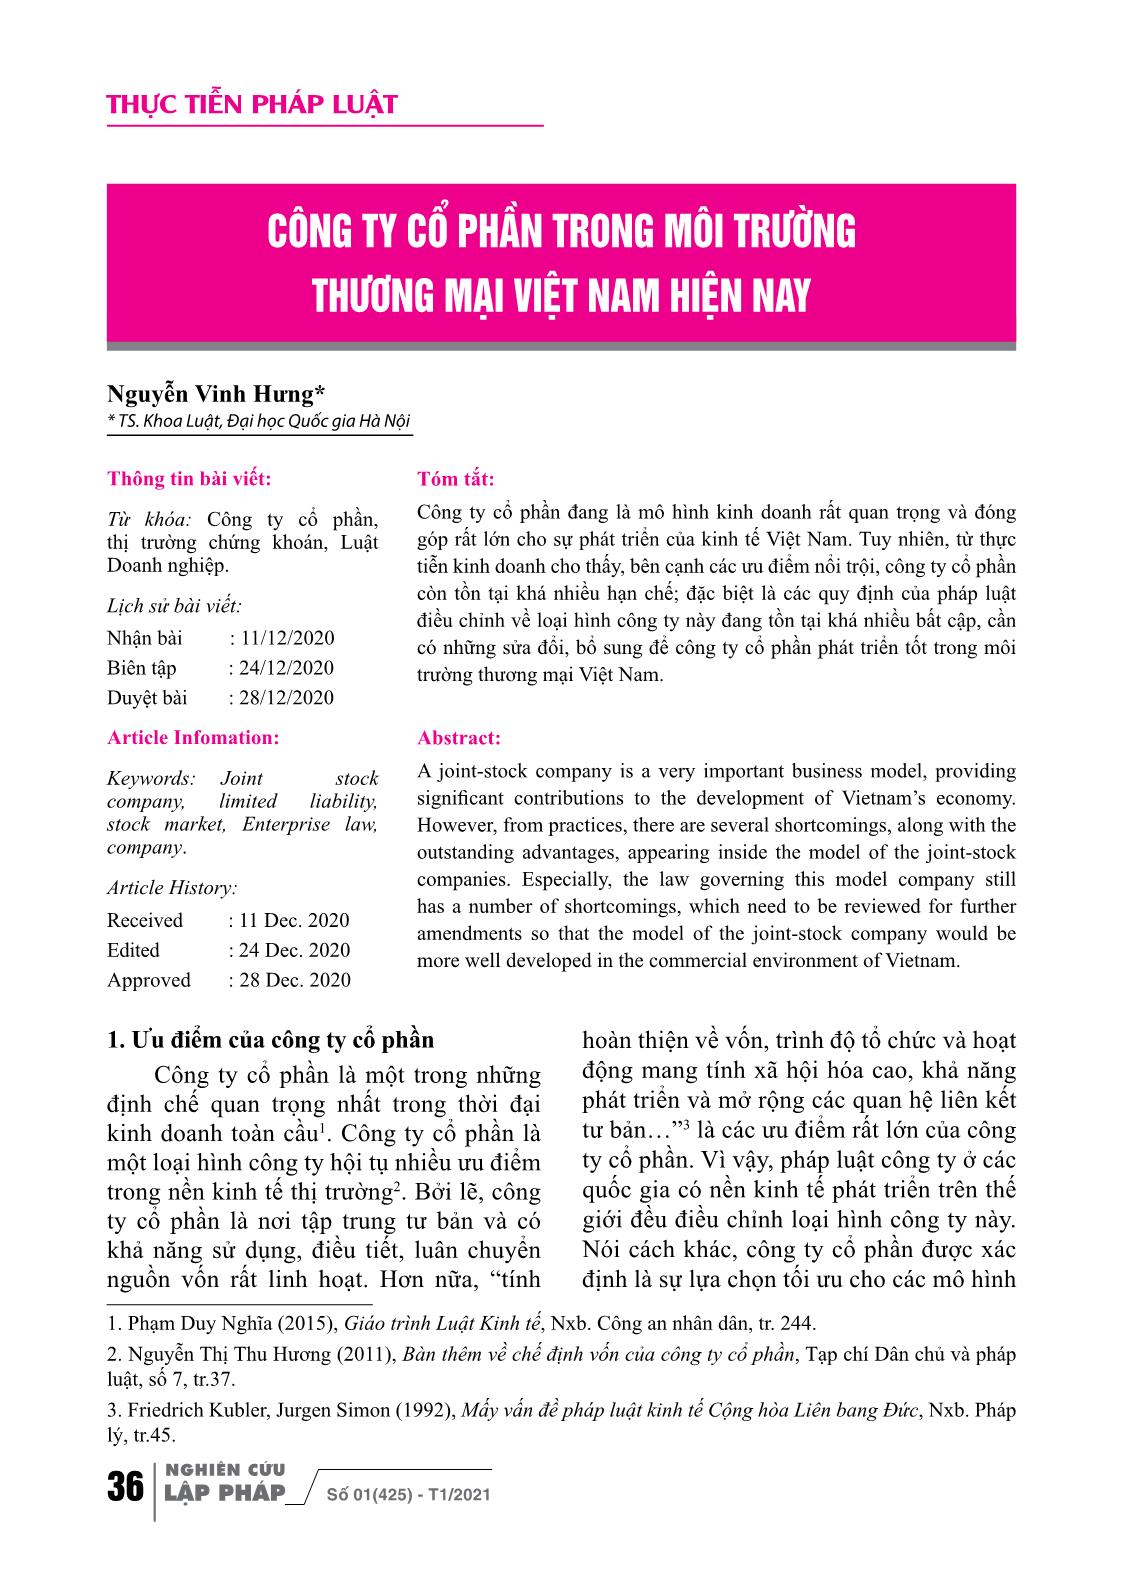 Công ty cổ phần trong môi trường thương mại Việt Nam hiện nay trang 1